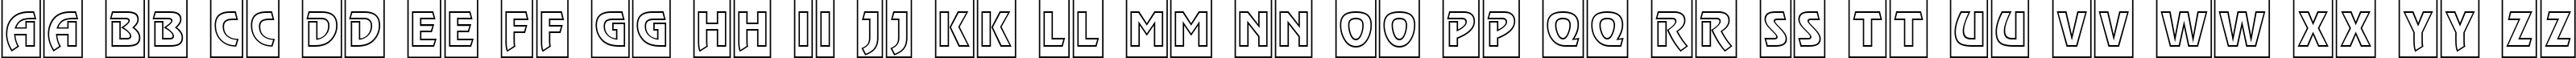 Пример написания английского алфавита шрифтом a_RewinderTitulCmOtl